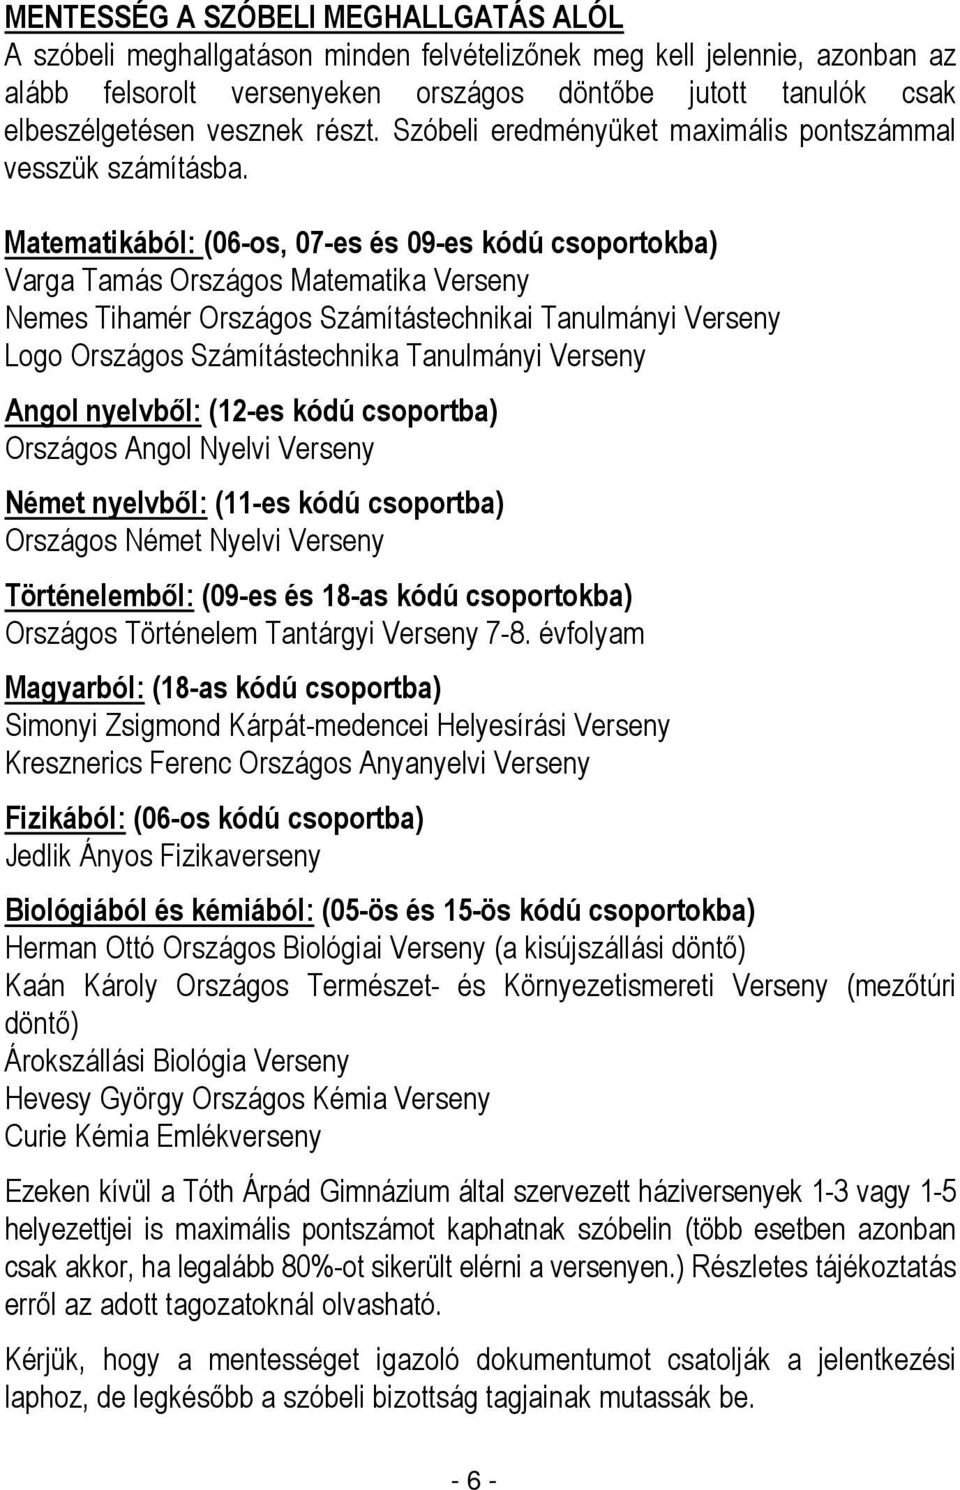 A debreceni Tóth Árpád Gimnázium felvételi tájékoztatója a 2014/2015-ös  tanévre - PDF Ingyenes letöltés